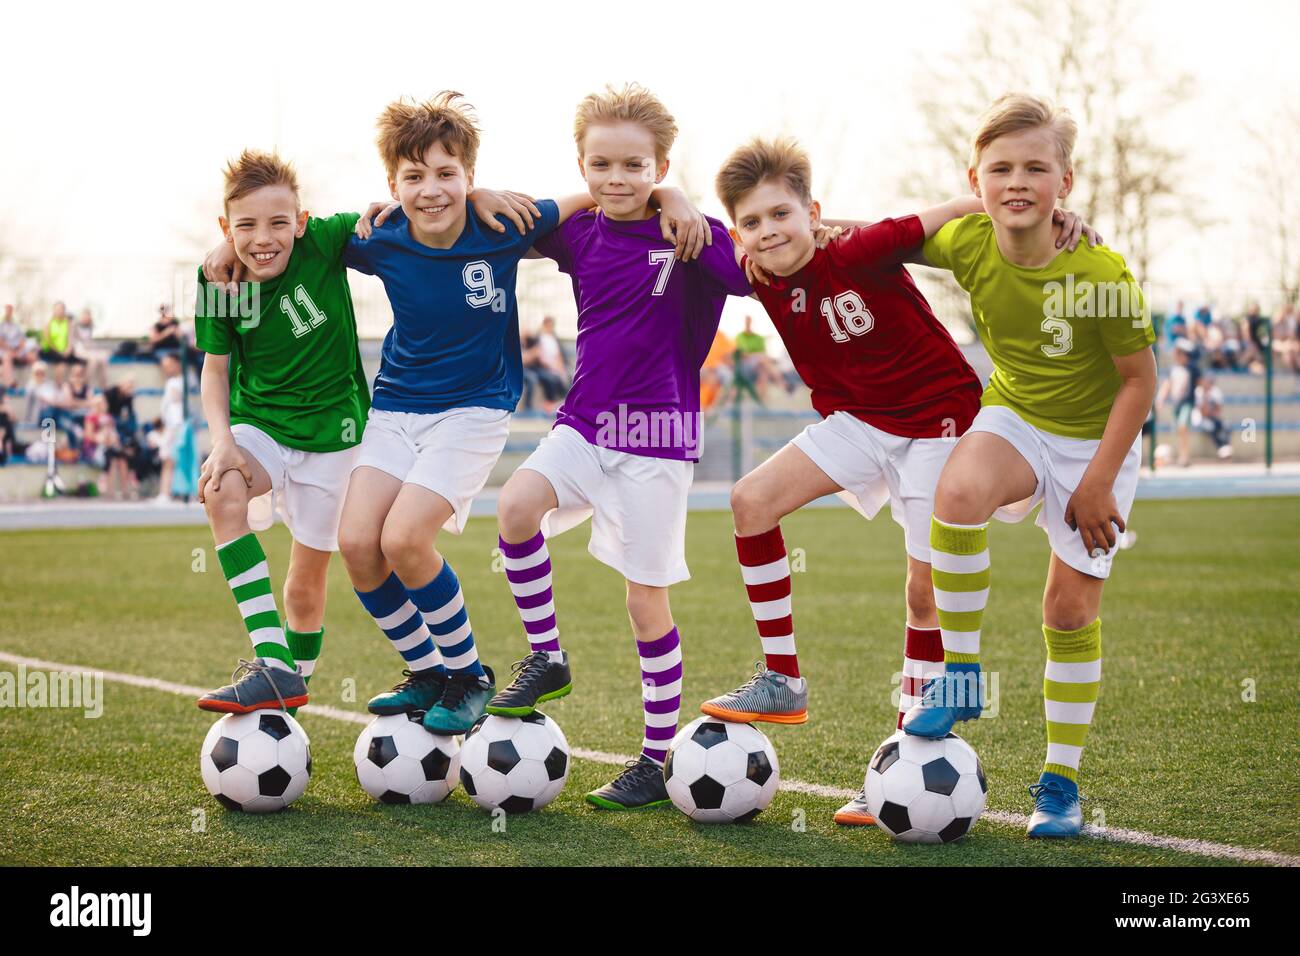 Groupe de jeunes garçons de football heureux en uniforme de jersey coloré. Cinq enfants joyeux avec des ballons de football souriant regardant la caméra. Enfants dans Banque D'Images